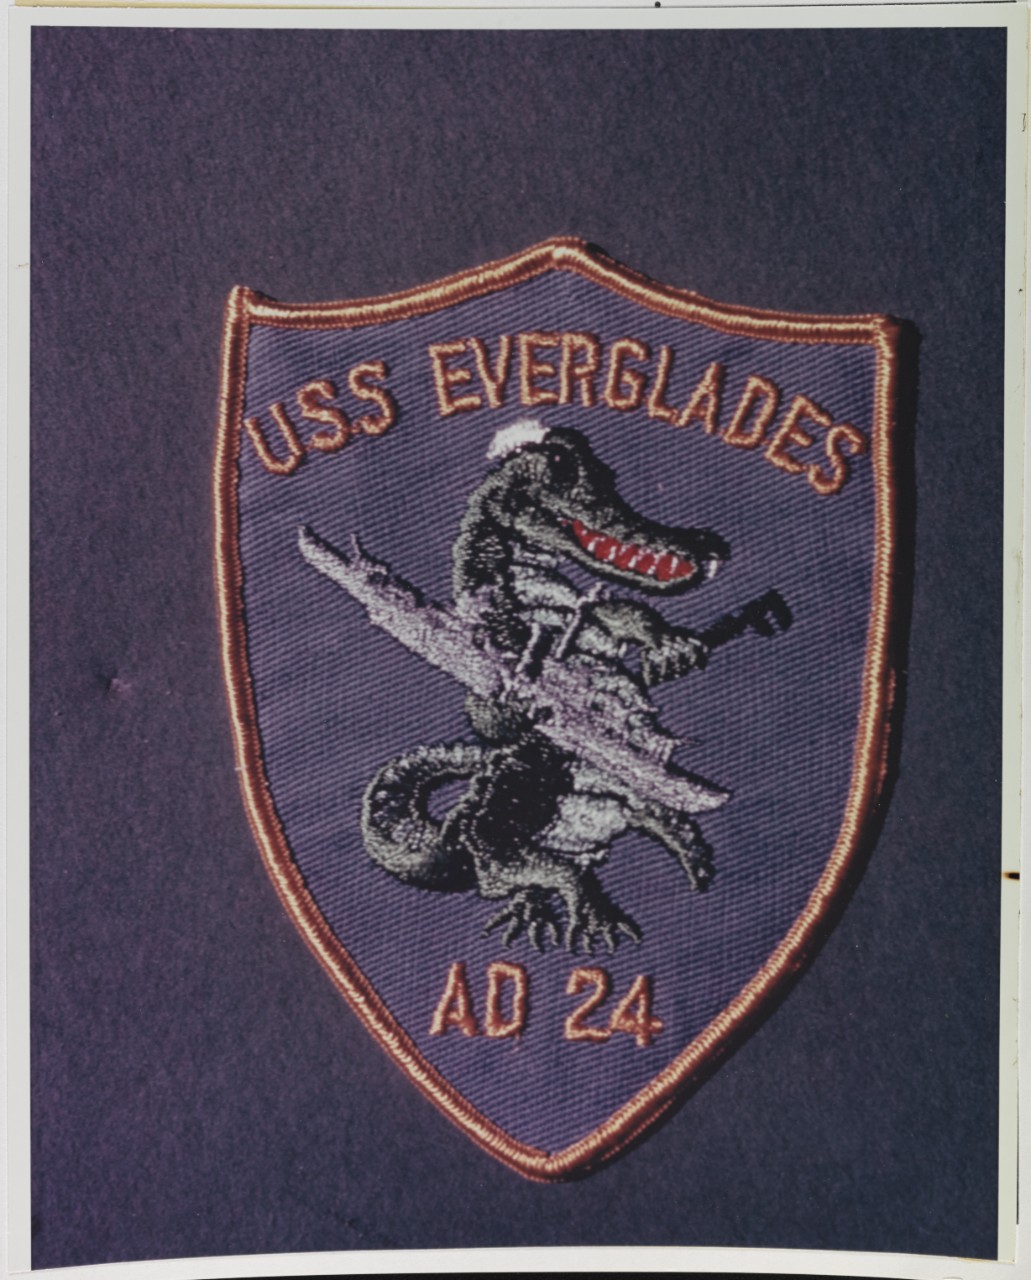 Insignia:  USS EVERGLADES (AD-24)